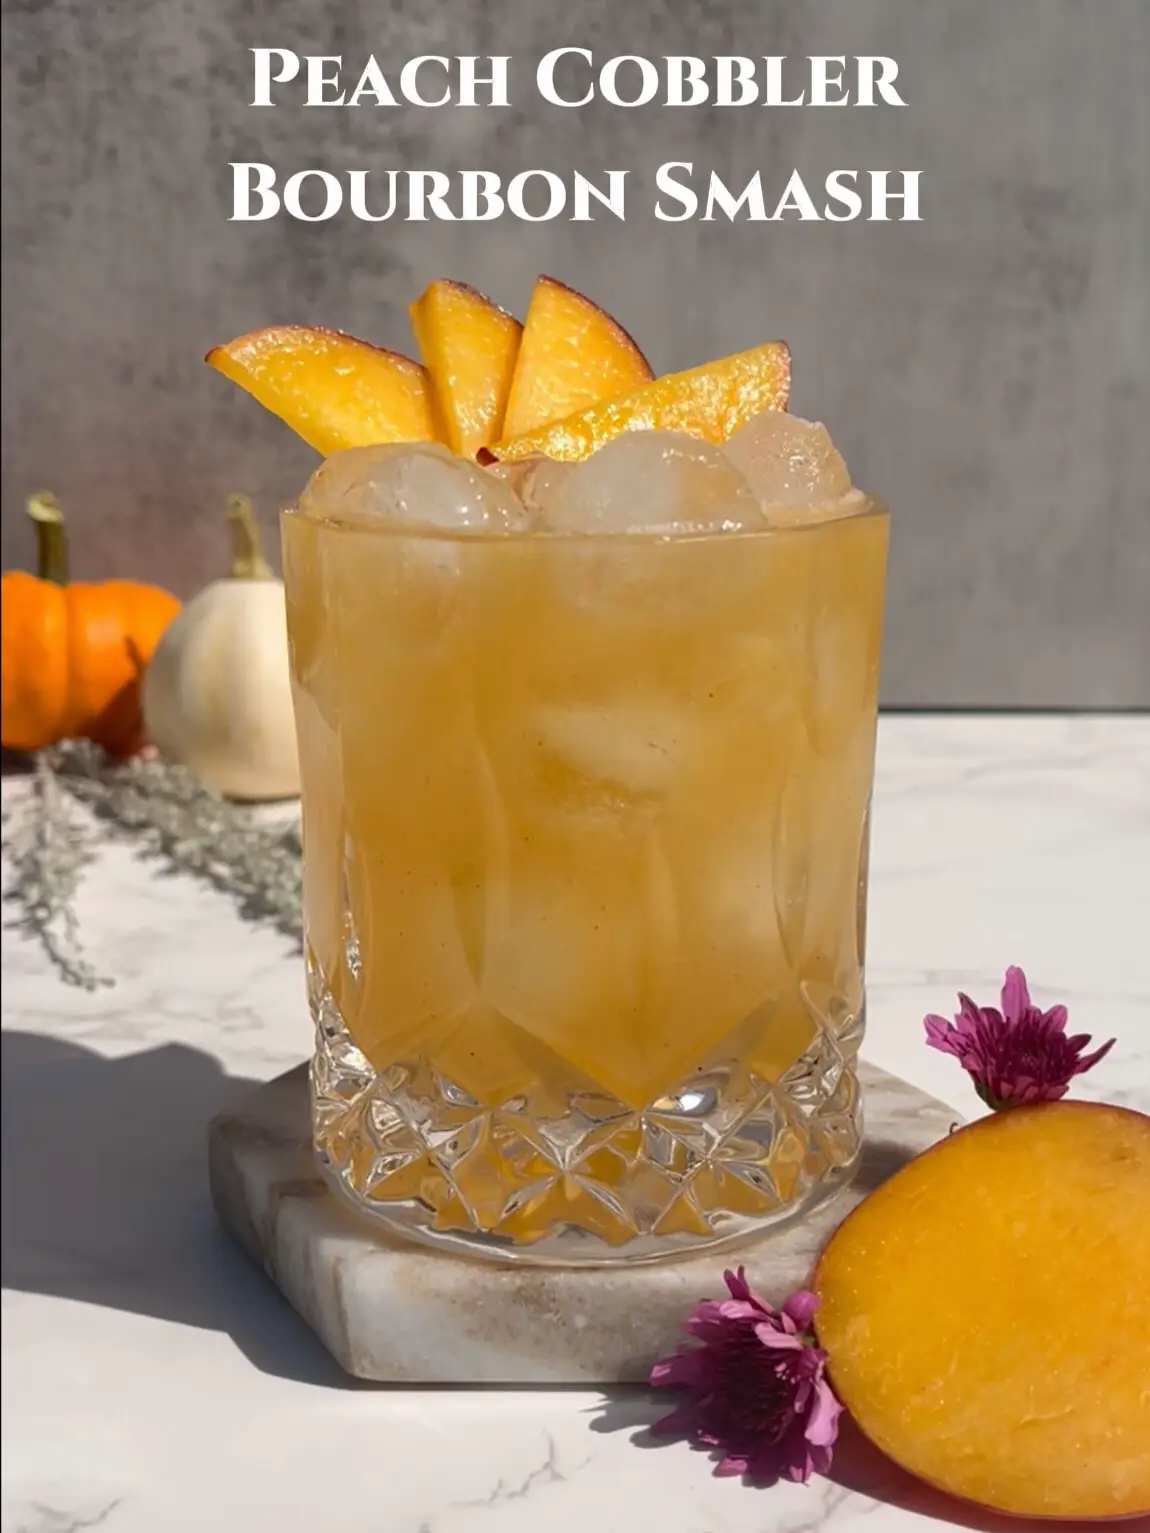 Peach Cobble Bourbon Smash 🍑's images